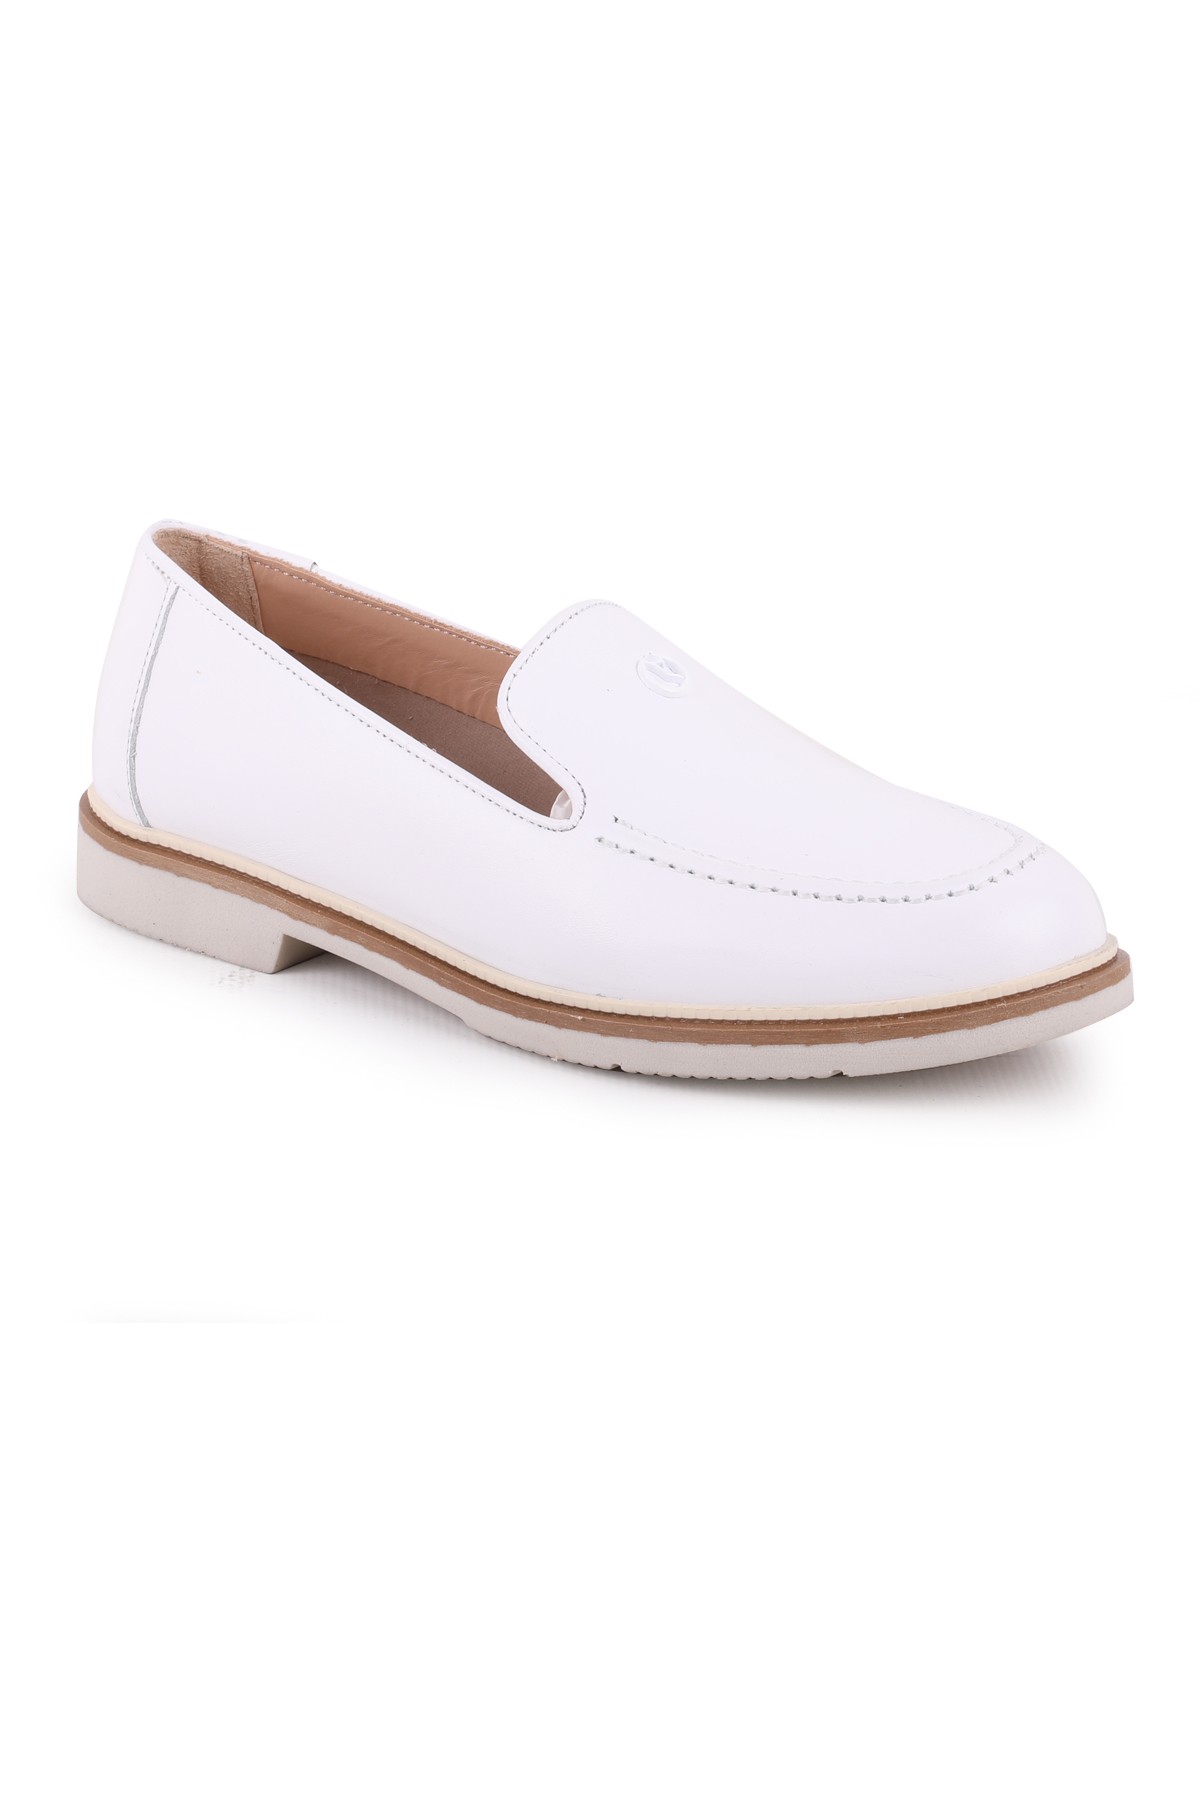 Libero L039.15104 Deri Kadın Casual Ayakkabı - Beyaz